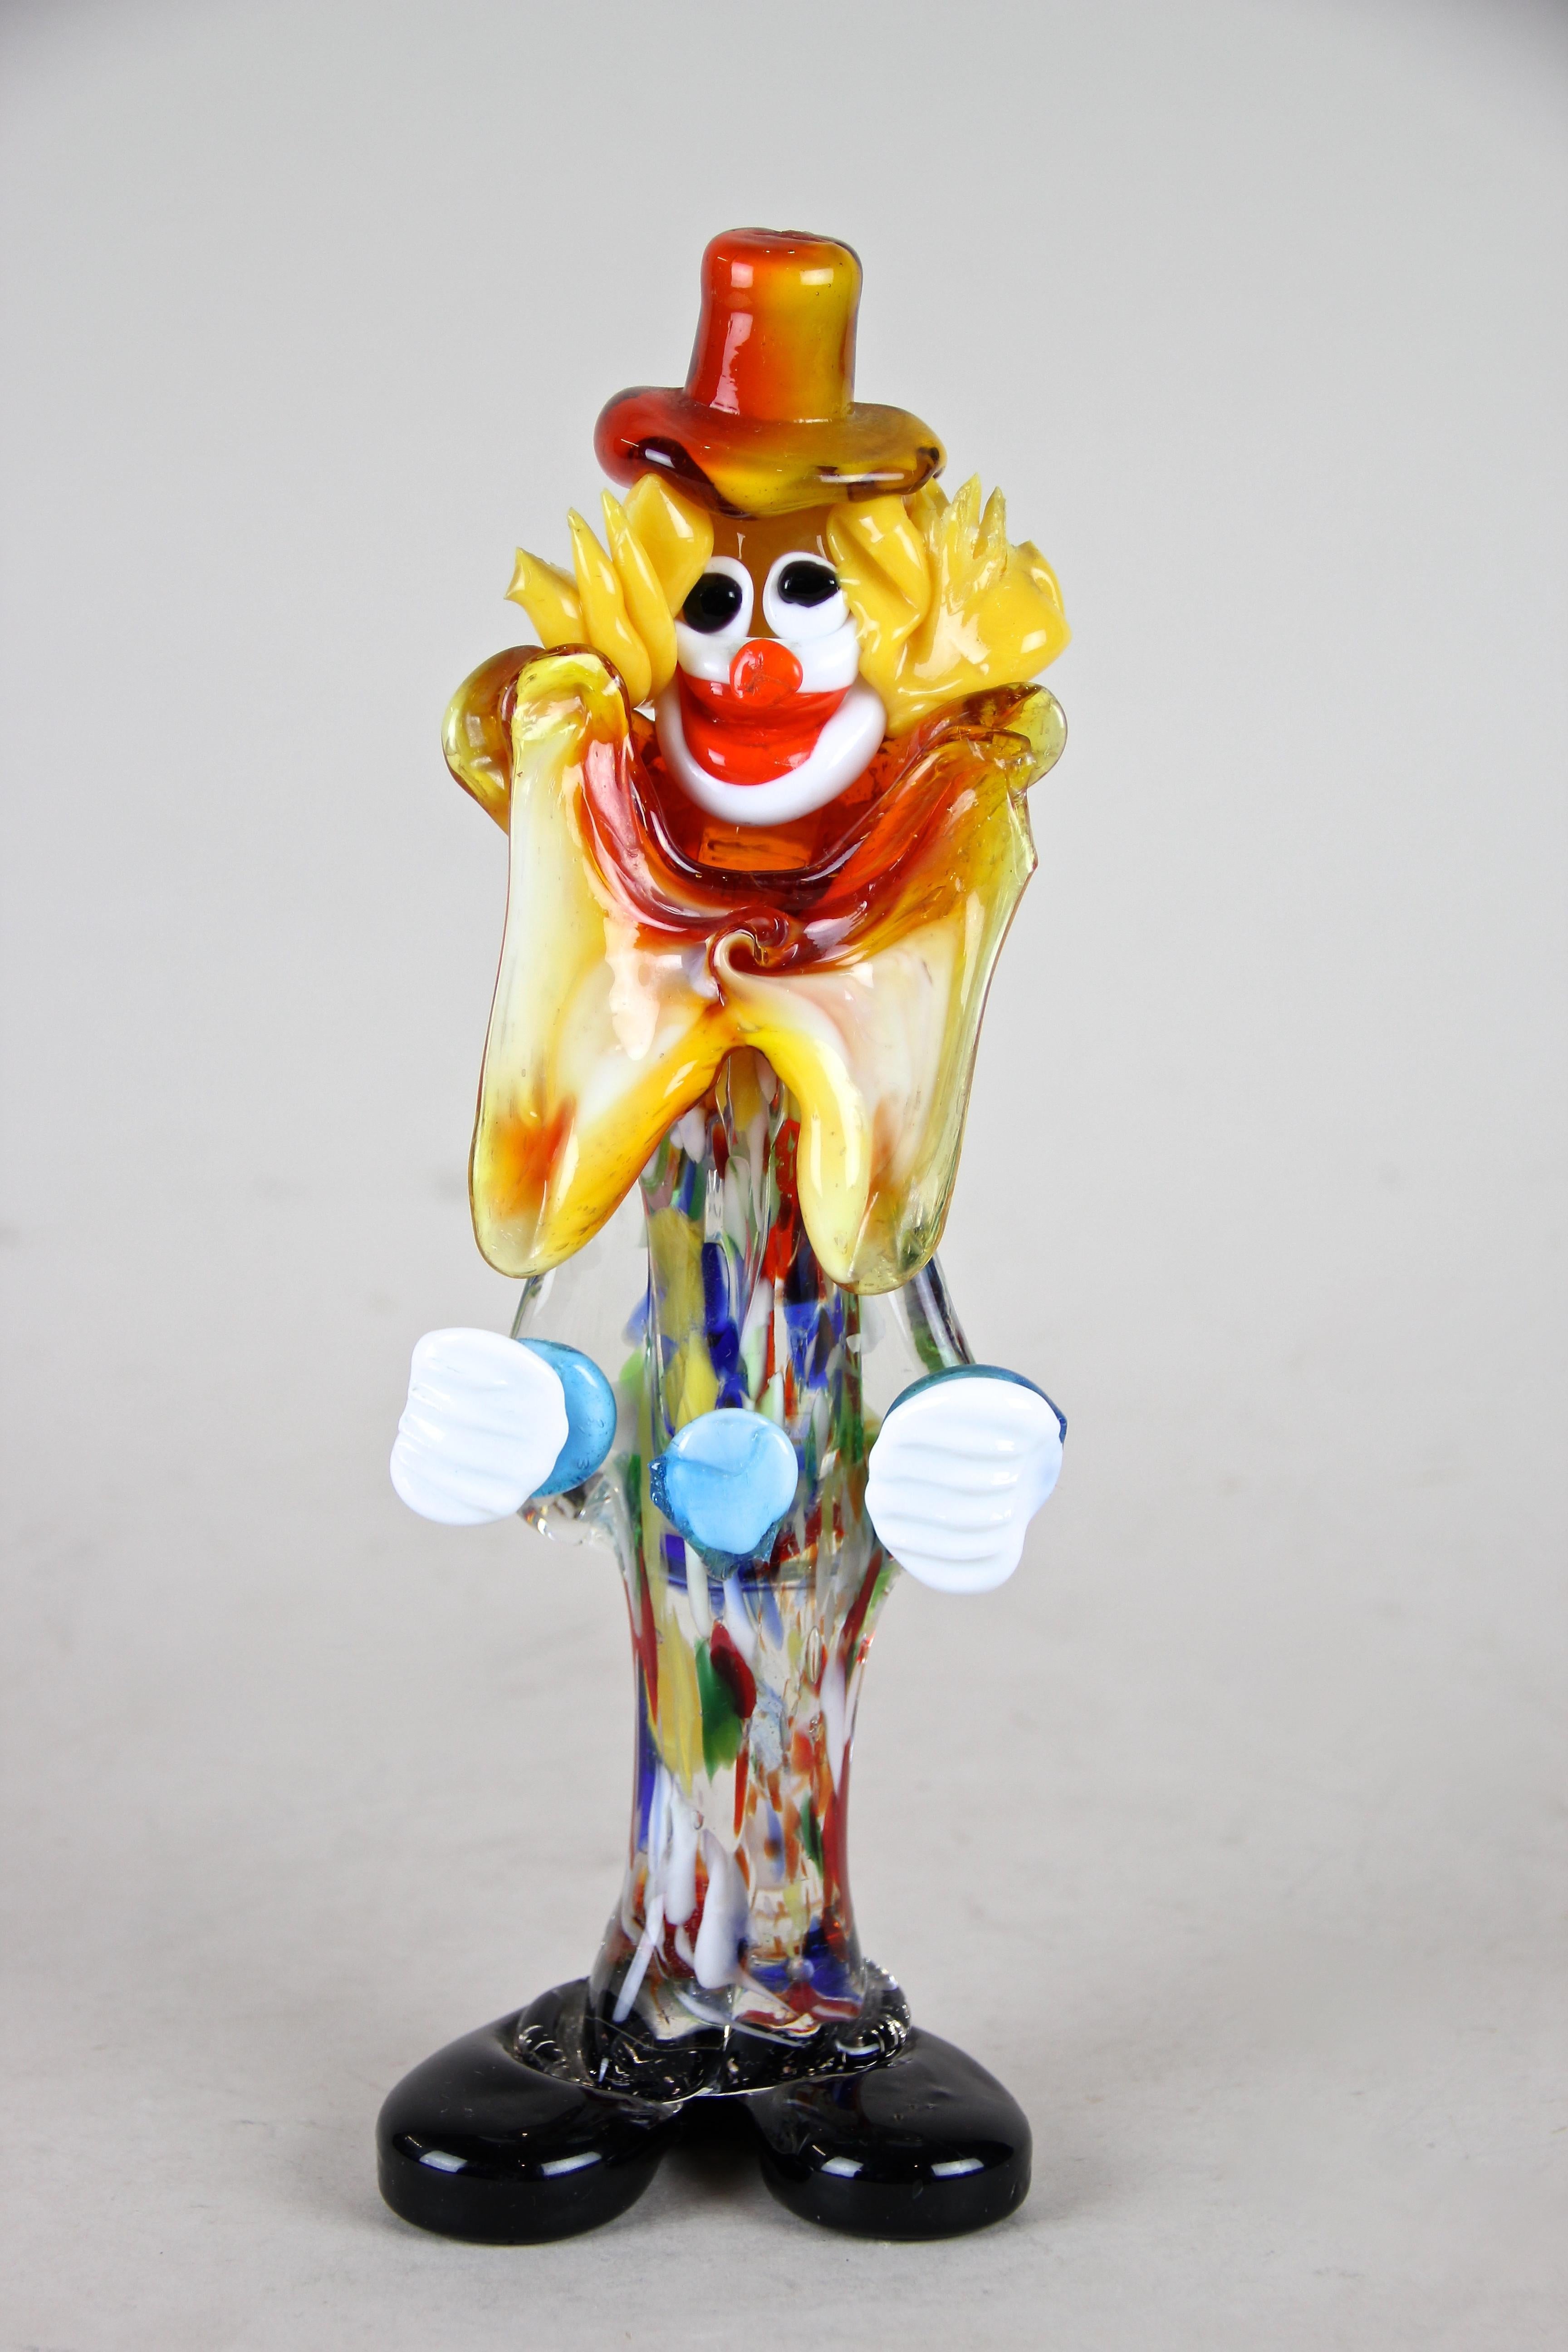 Superbe clown en verre de Murano datant du milieu du siècle dernier, vers 1950 en Italie. Les amateurs de verre de Murano vont adorer cette pièce : de grosses chaussures noires, un corps en verre multicolore, un drôle de visage avec des cheveux